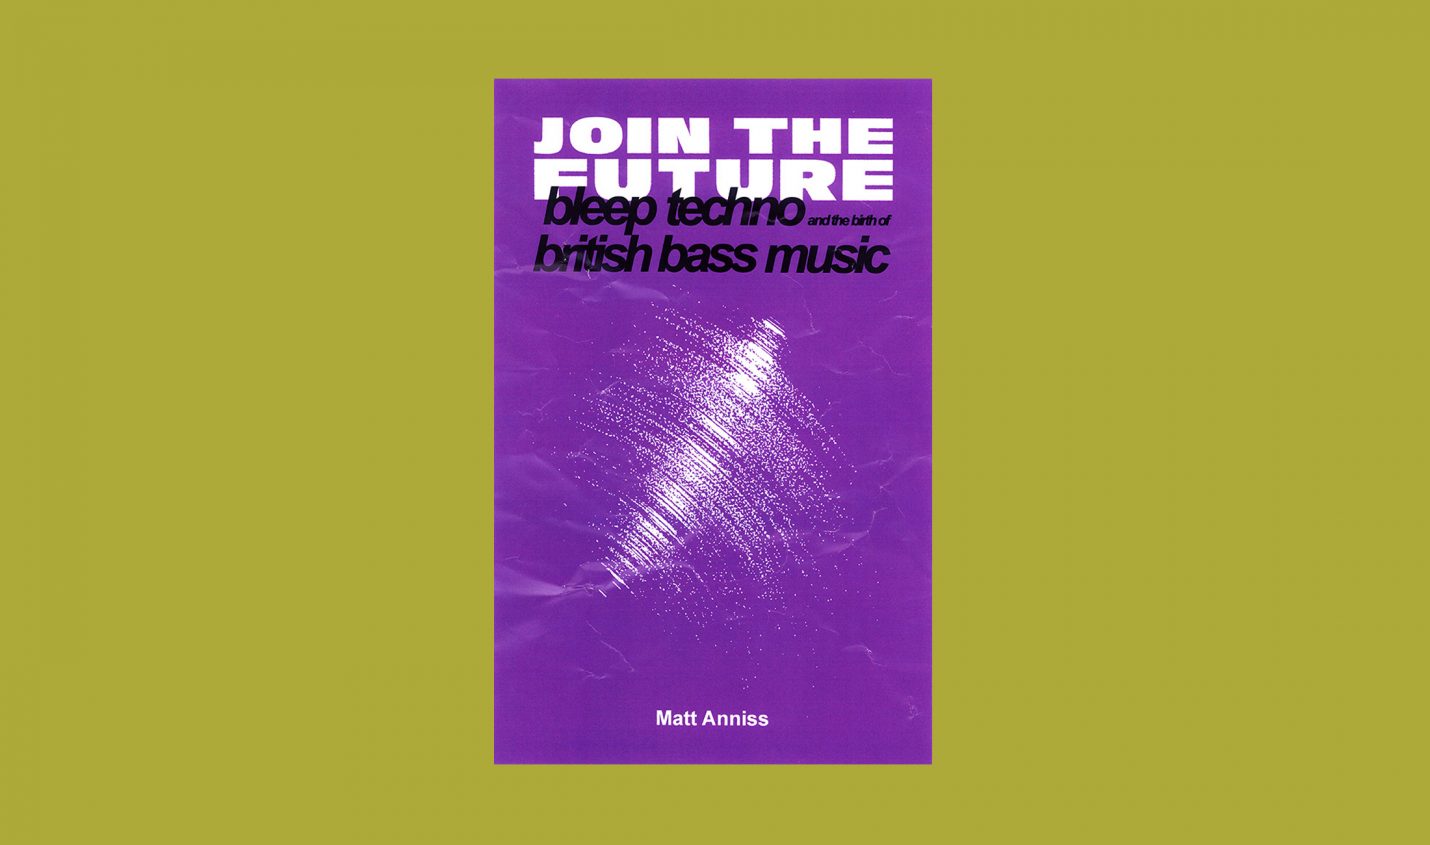 Join The Future: Buch und Mix über britischen Bleep Techno und Warp